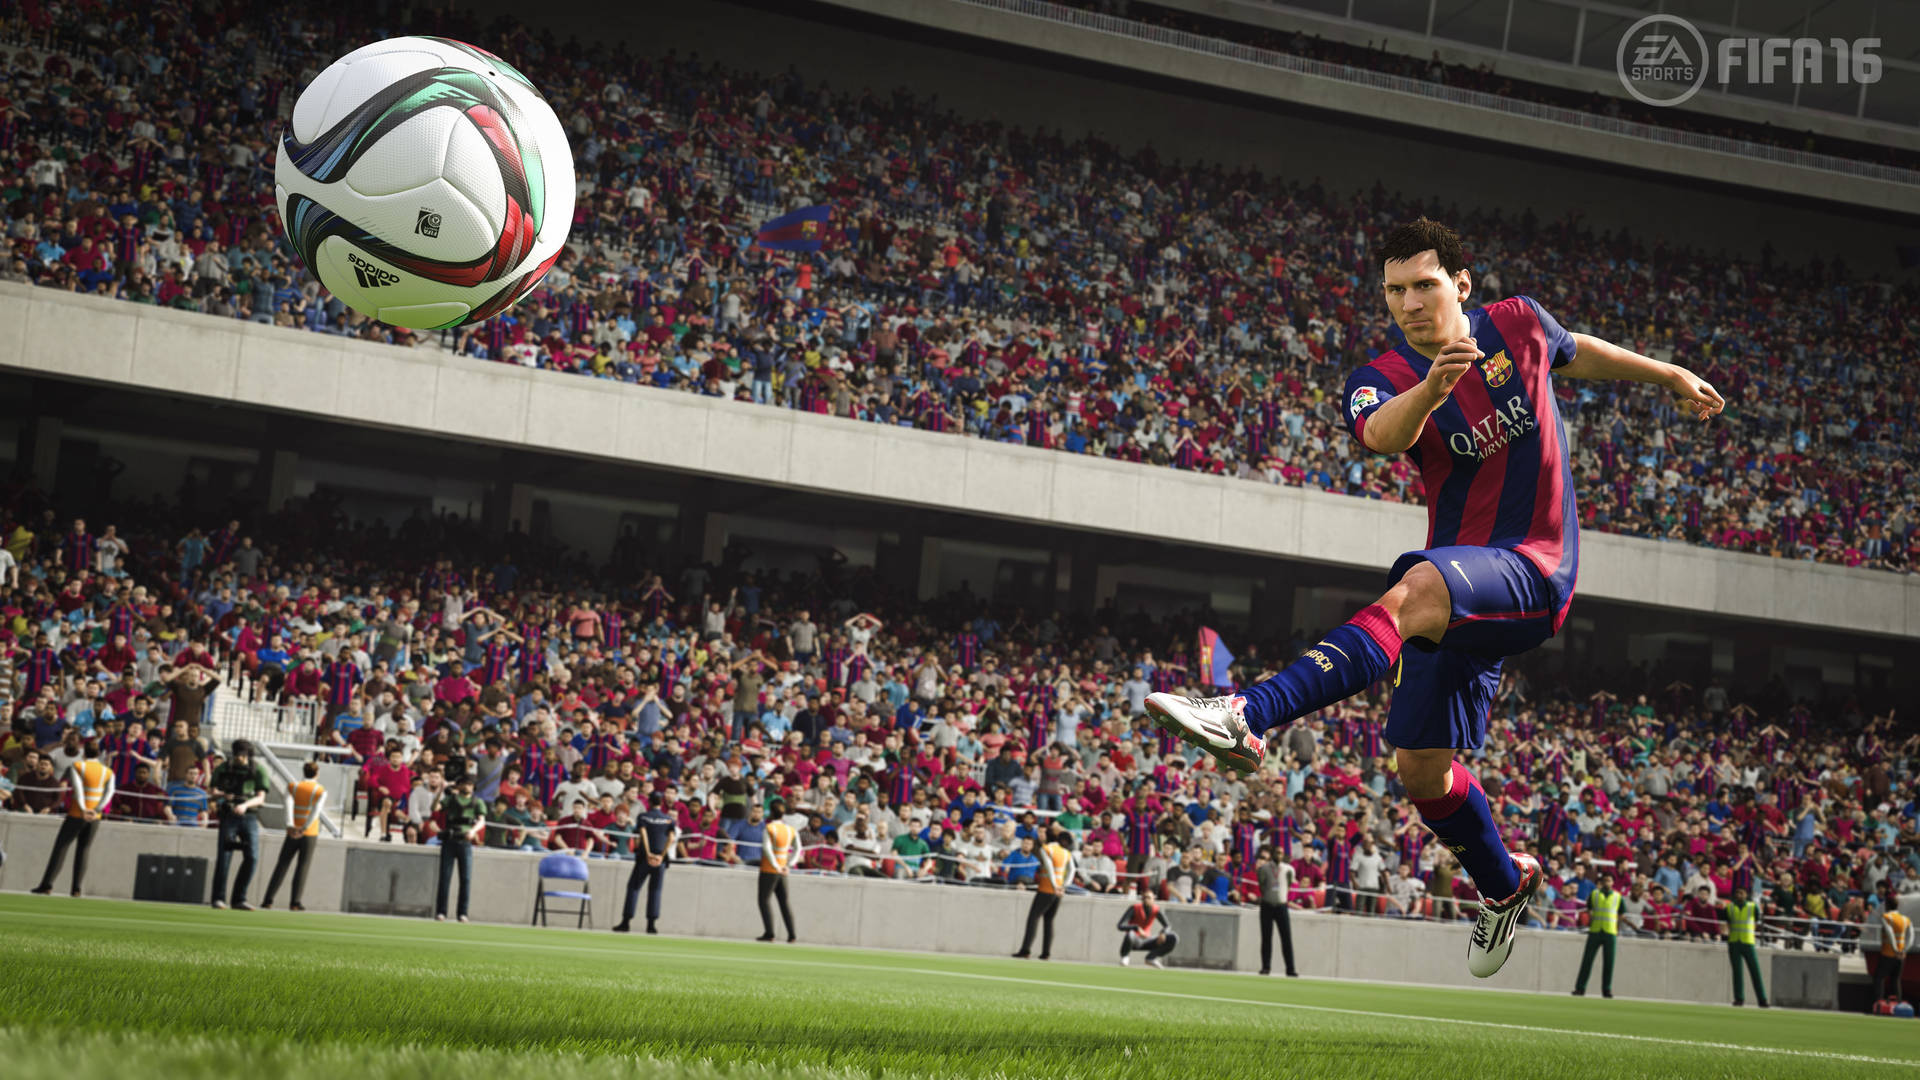 Fifa 16 Messi 4k Ultra Hd Wallpaper